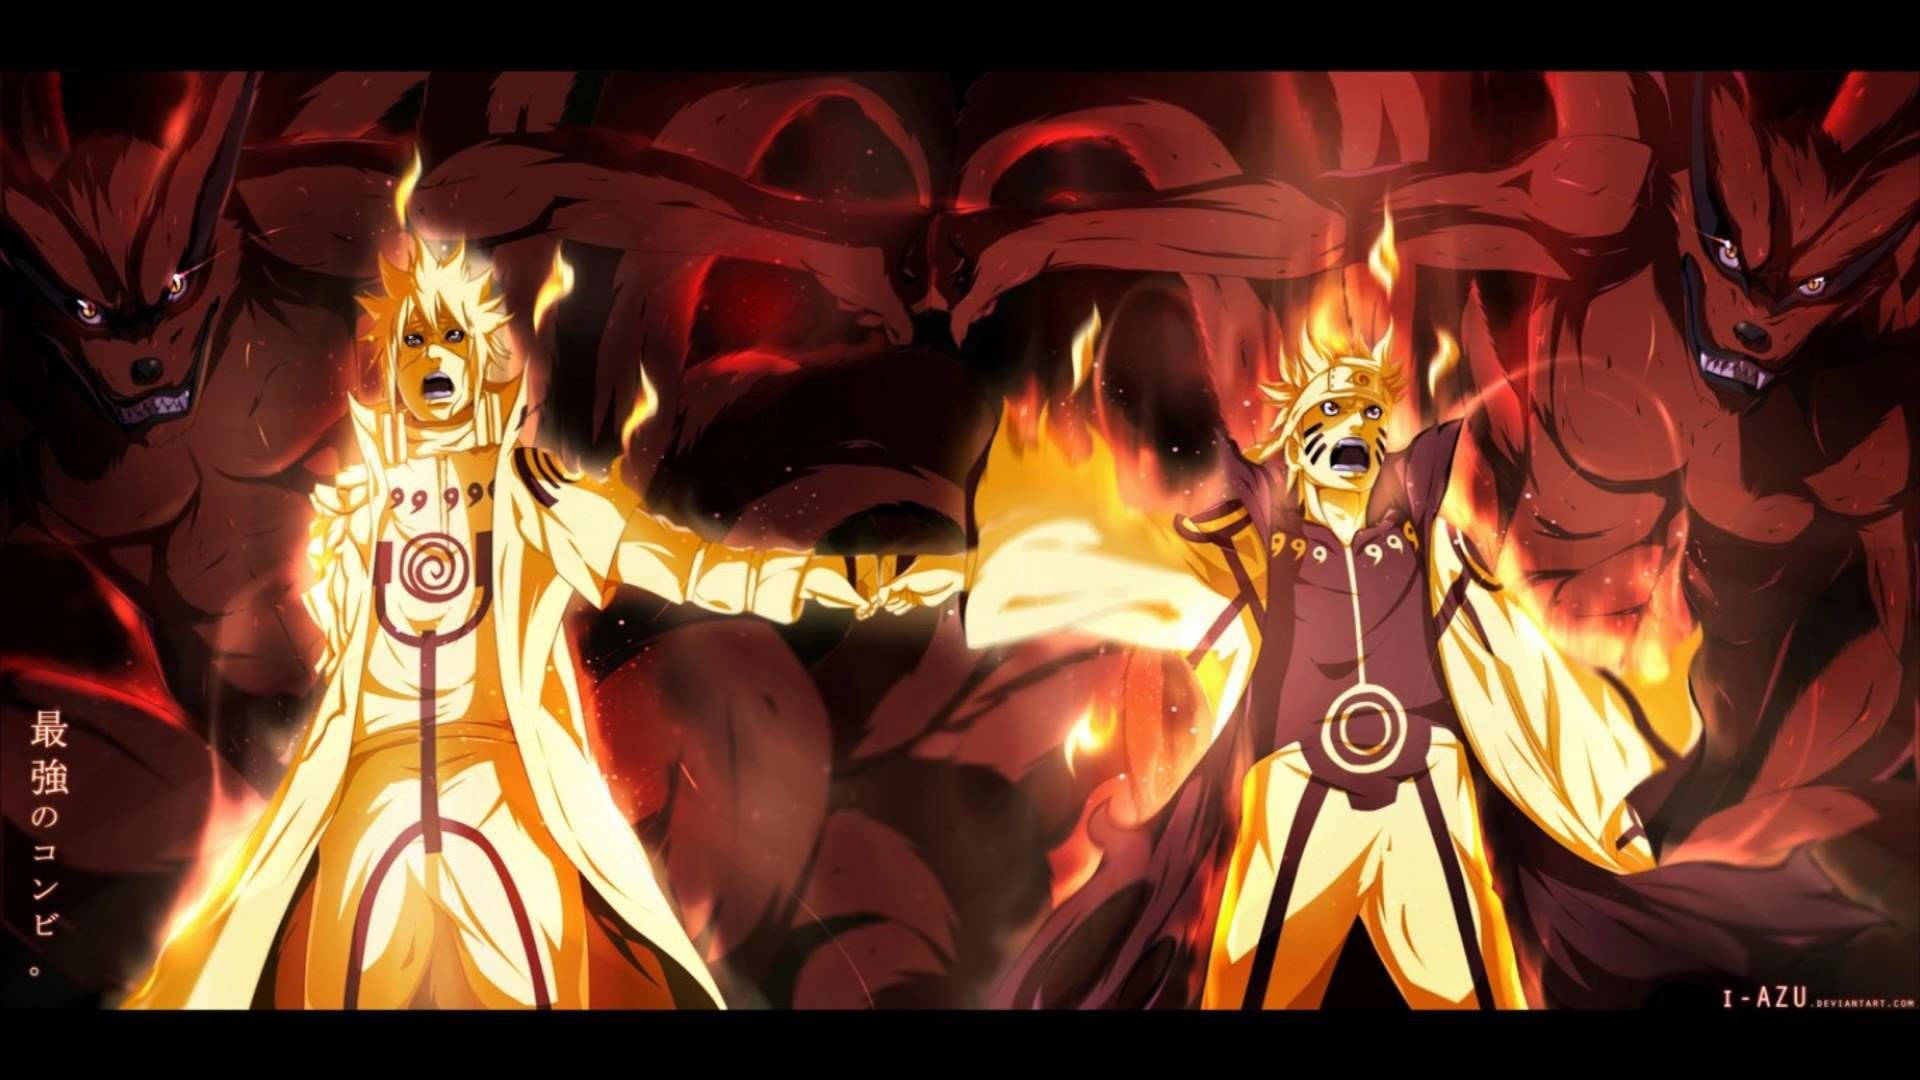 Naruto And Minato Fist Bump